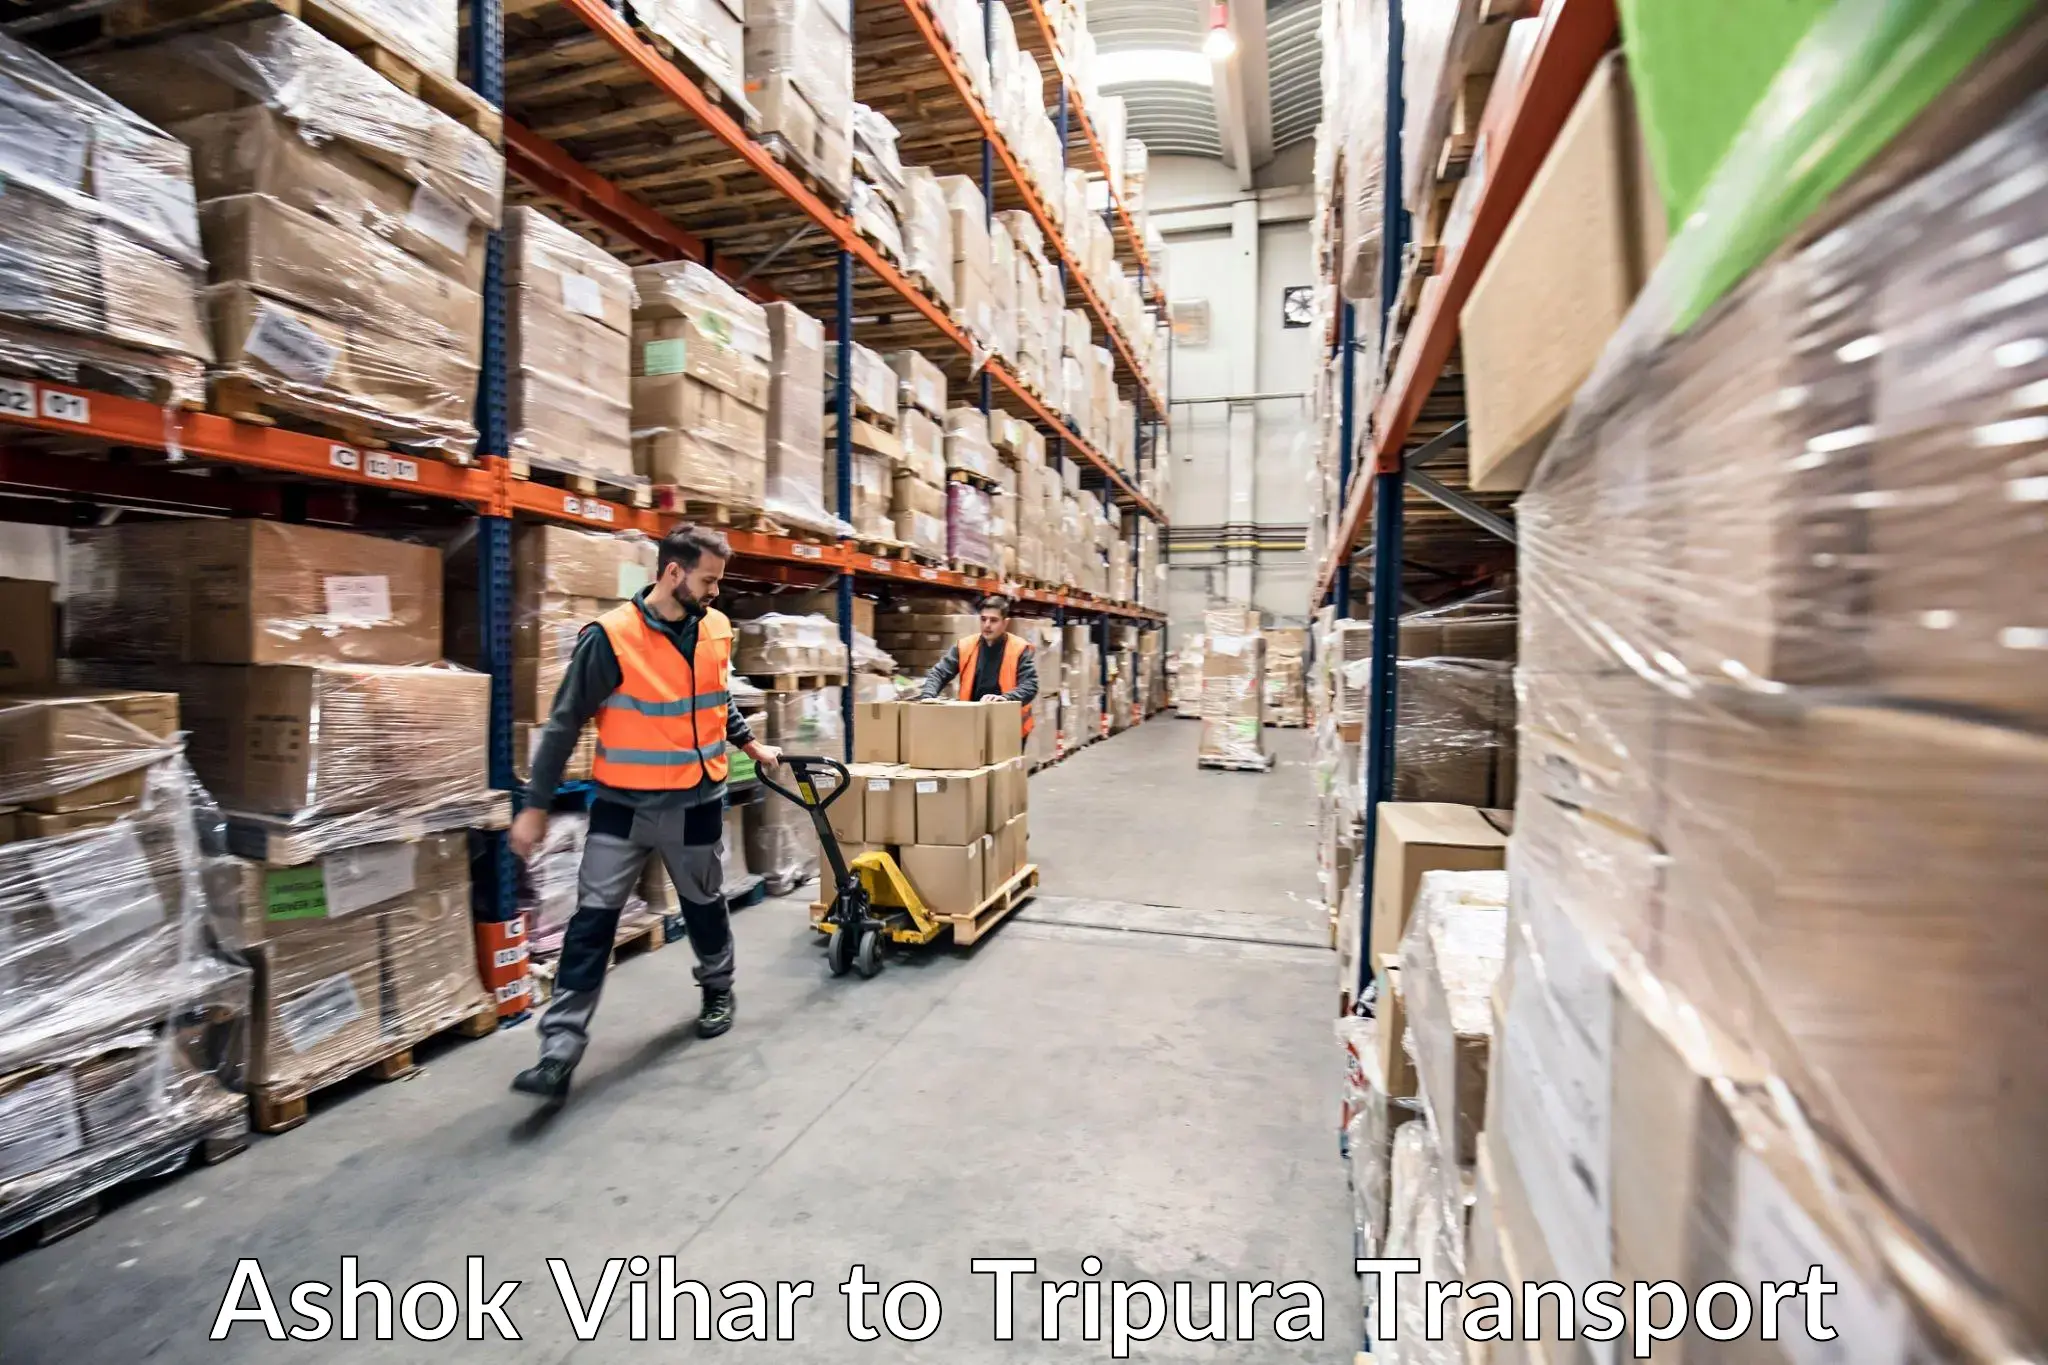 Furniture transport service Ashok Vihar to South Tripura